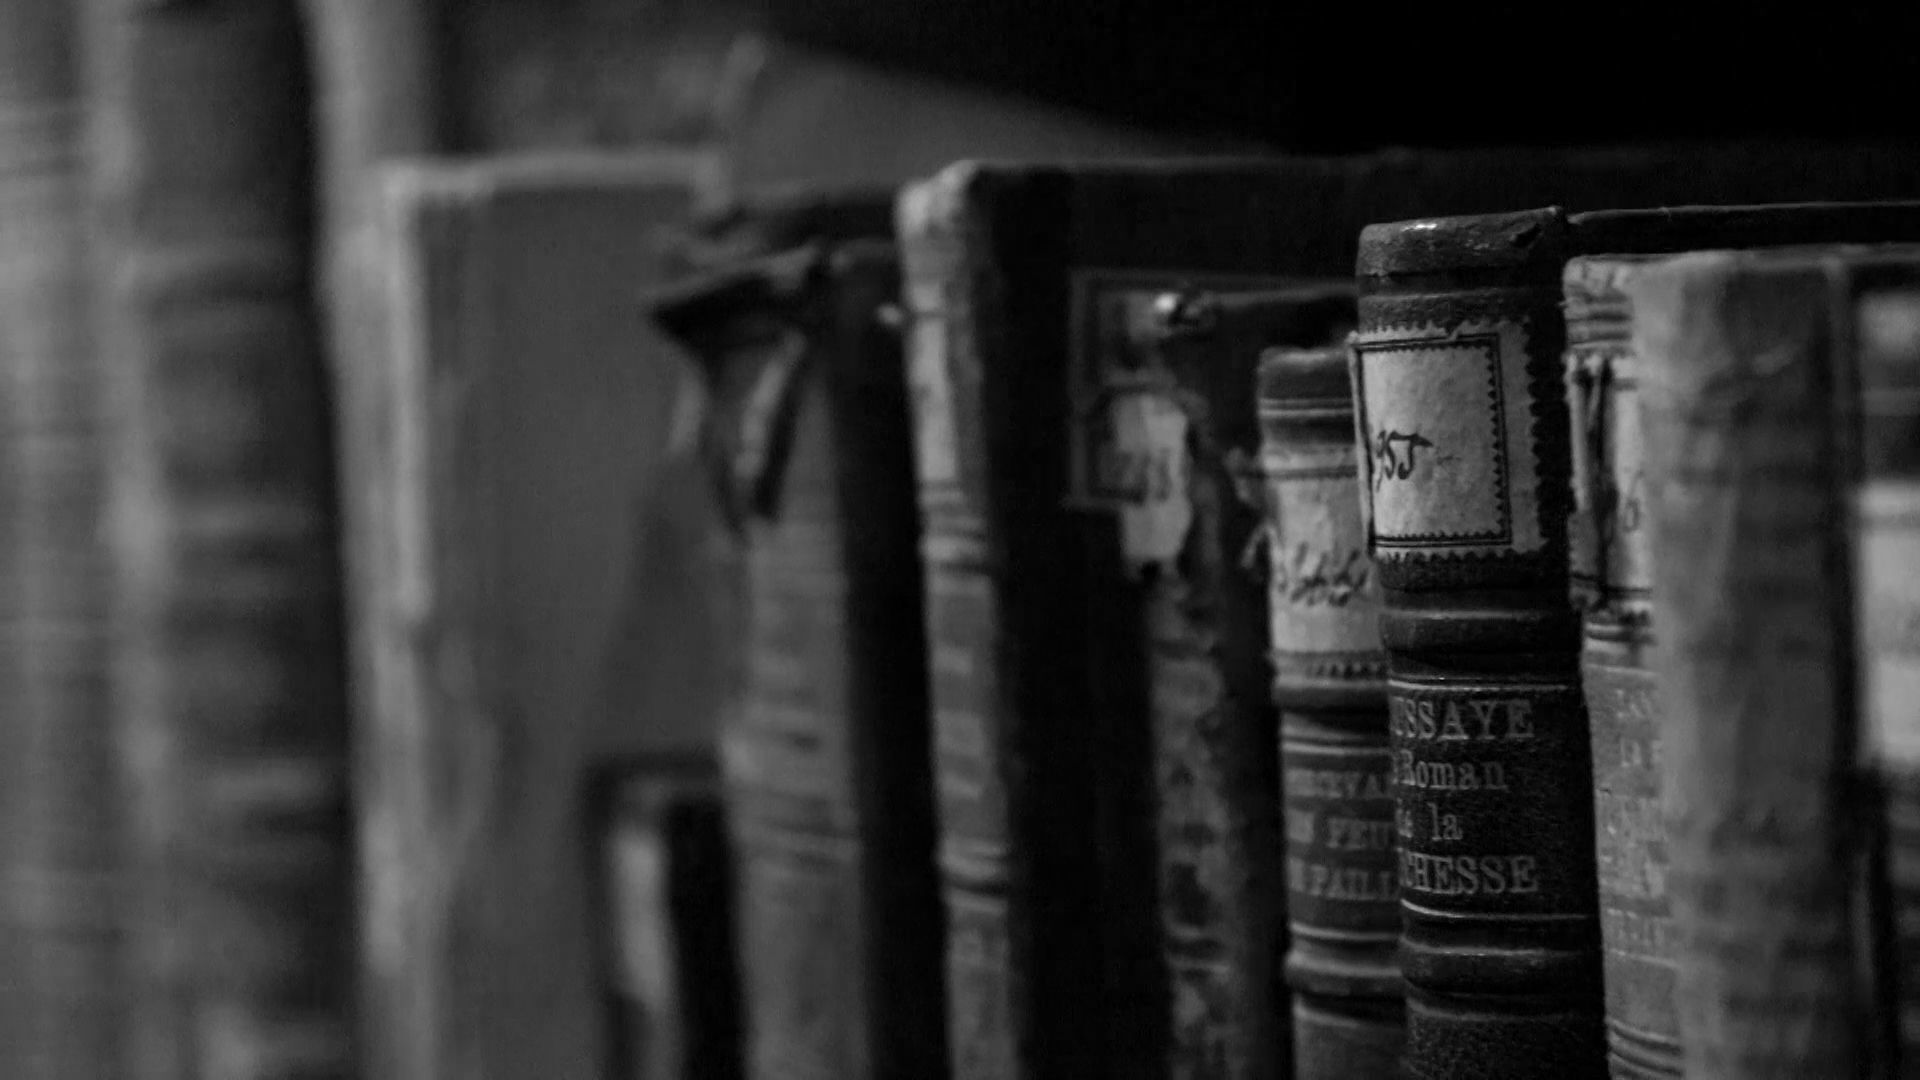 Ватра данима гутала столећа: Највећа ломача књига у Европи била је у — Београду /фото/ - Sputnik Србија, 1920, 05.04.2021